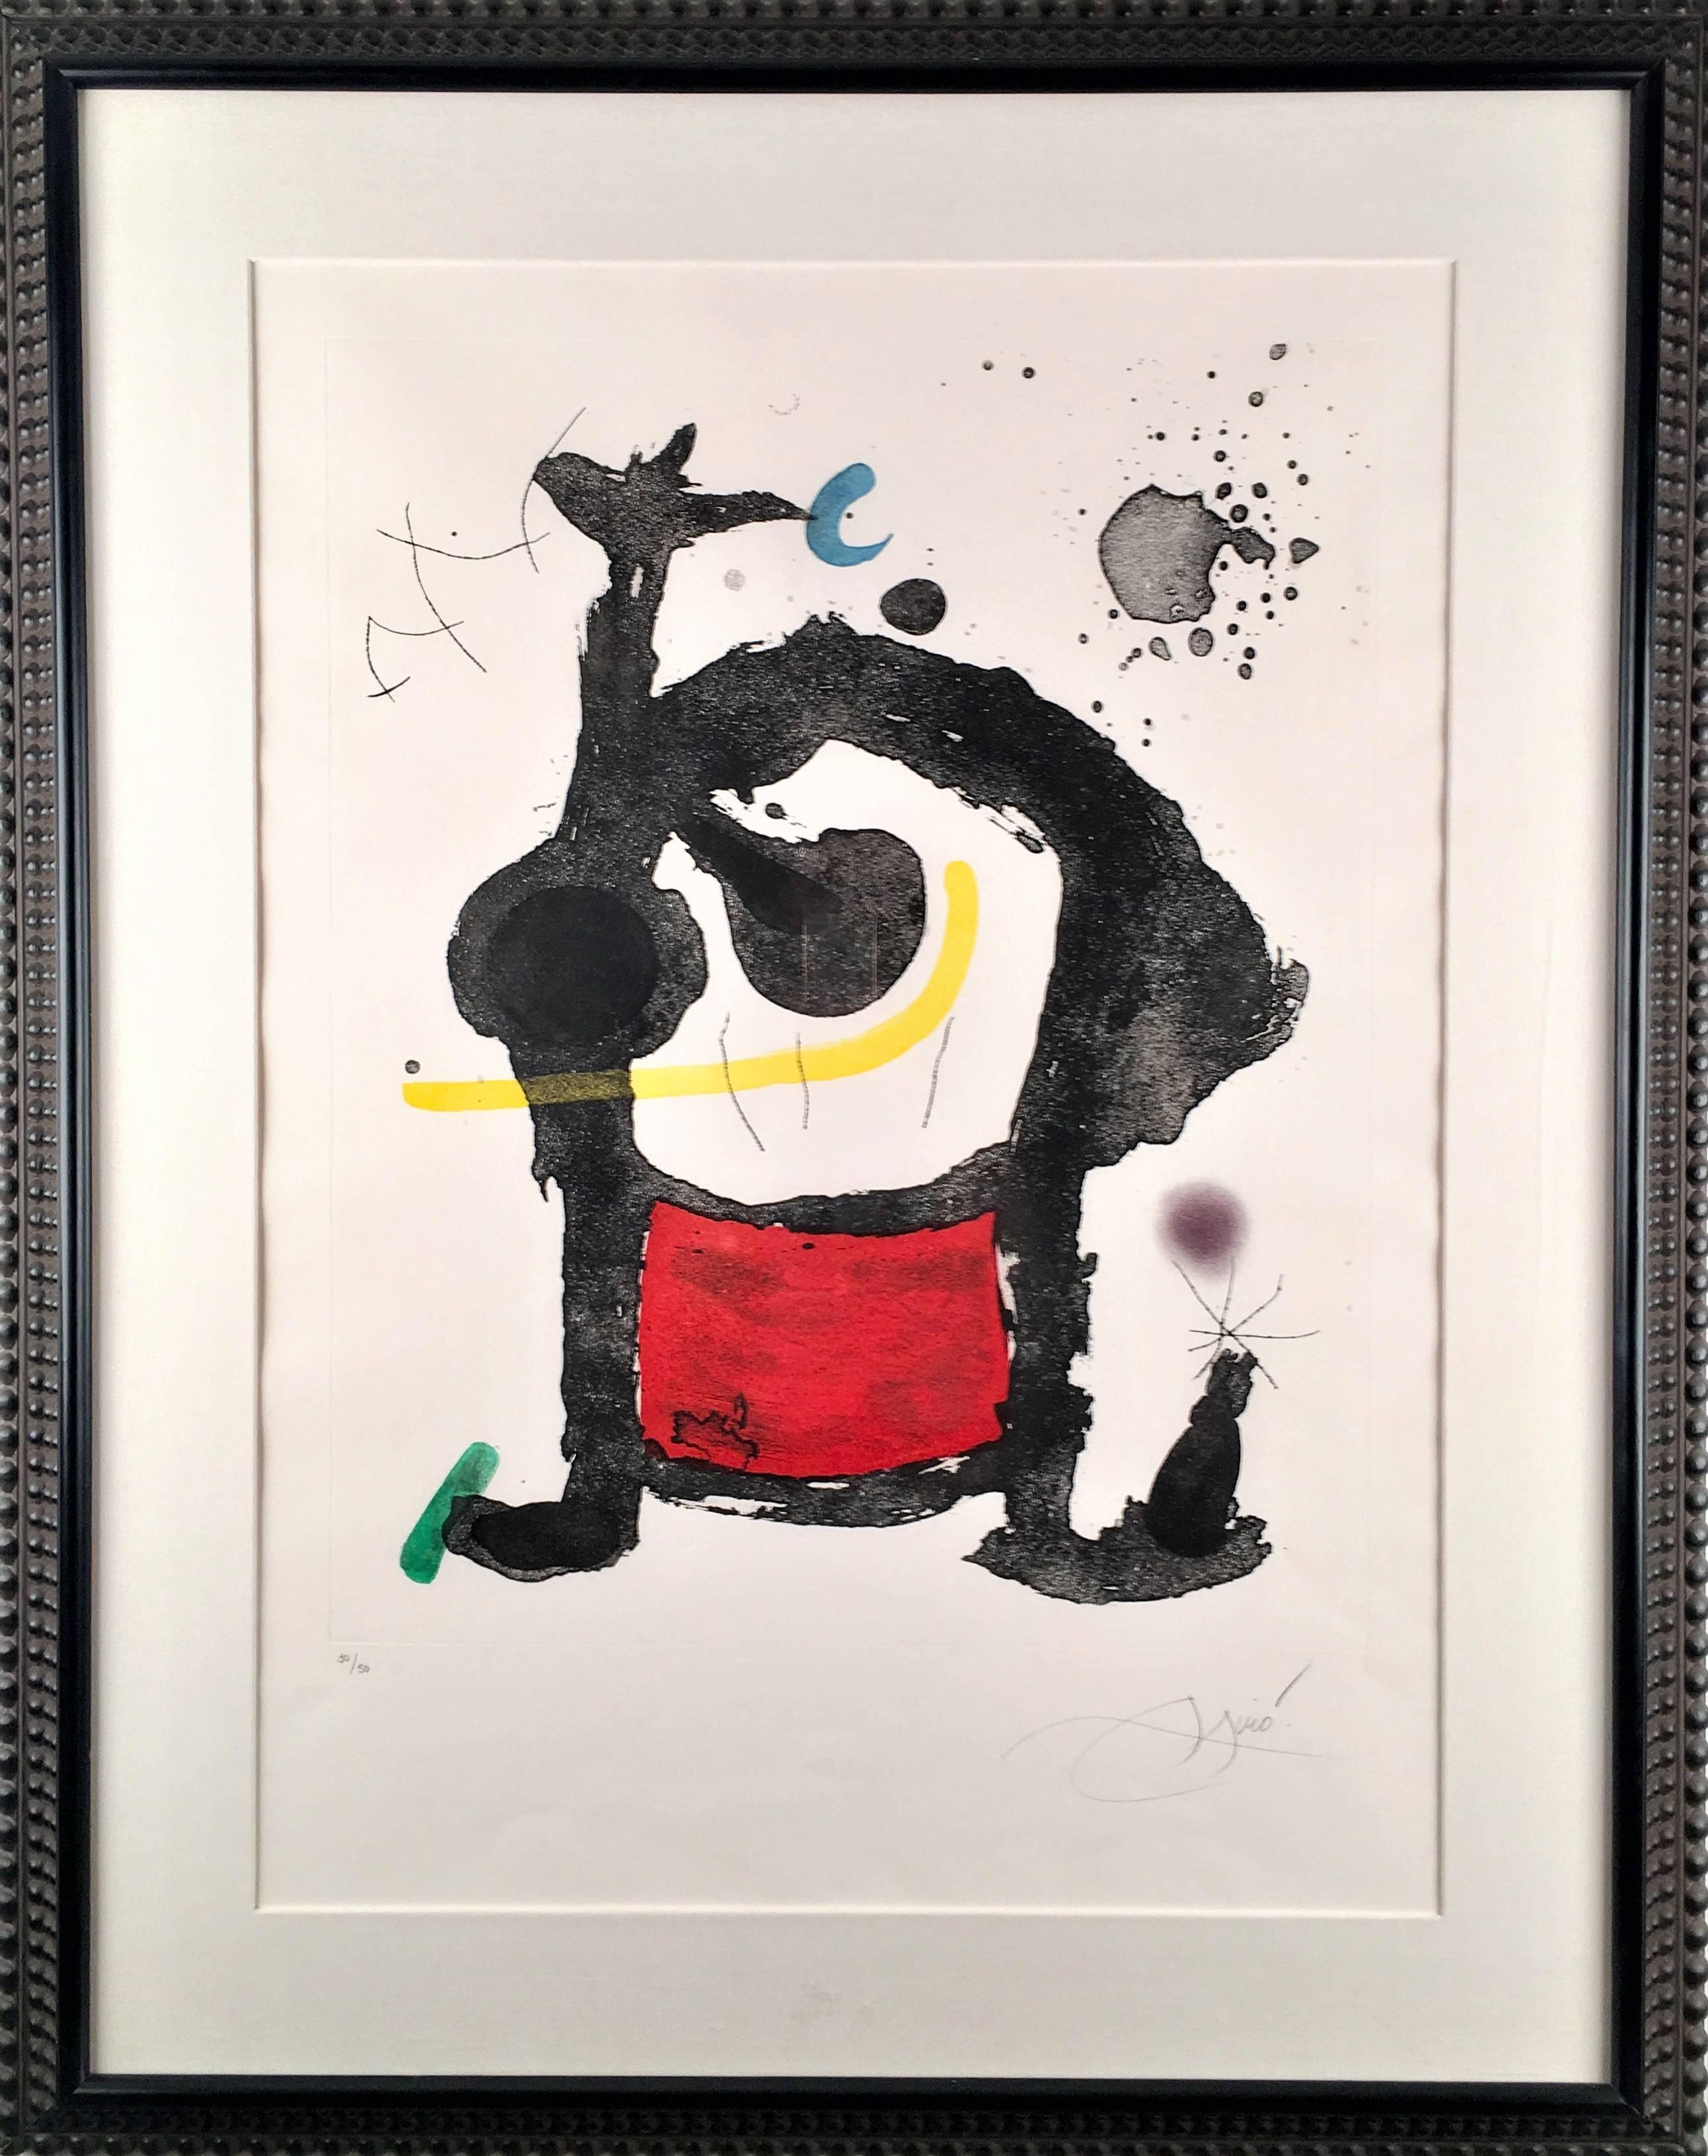 Bethsabée - Print by Joan Miró